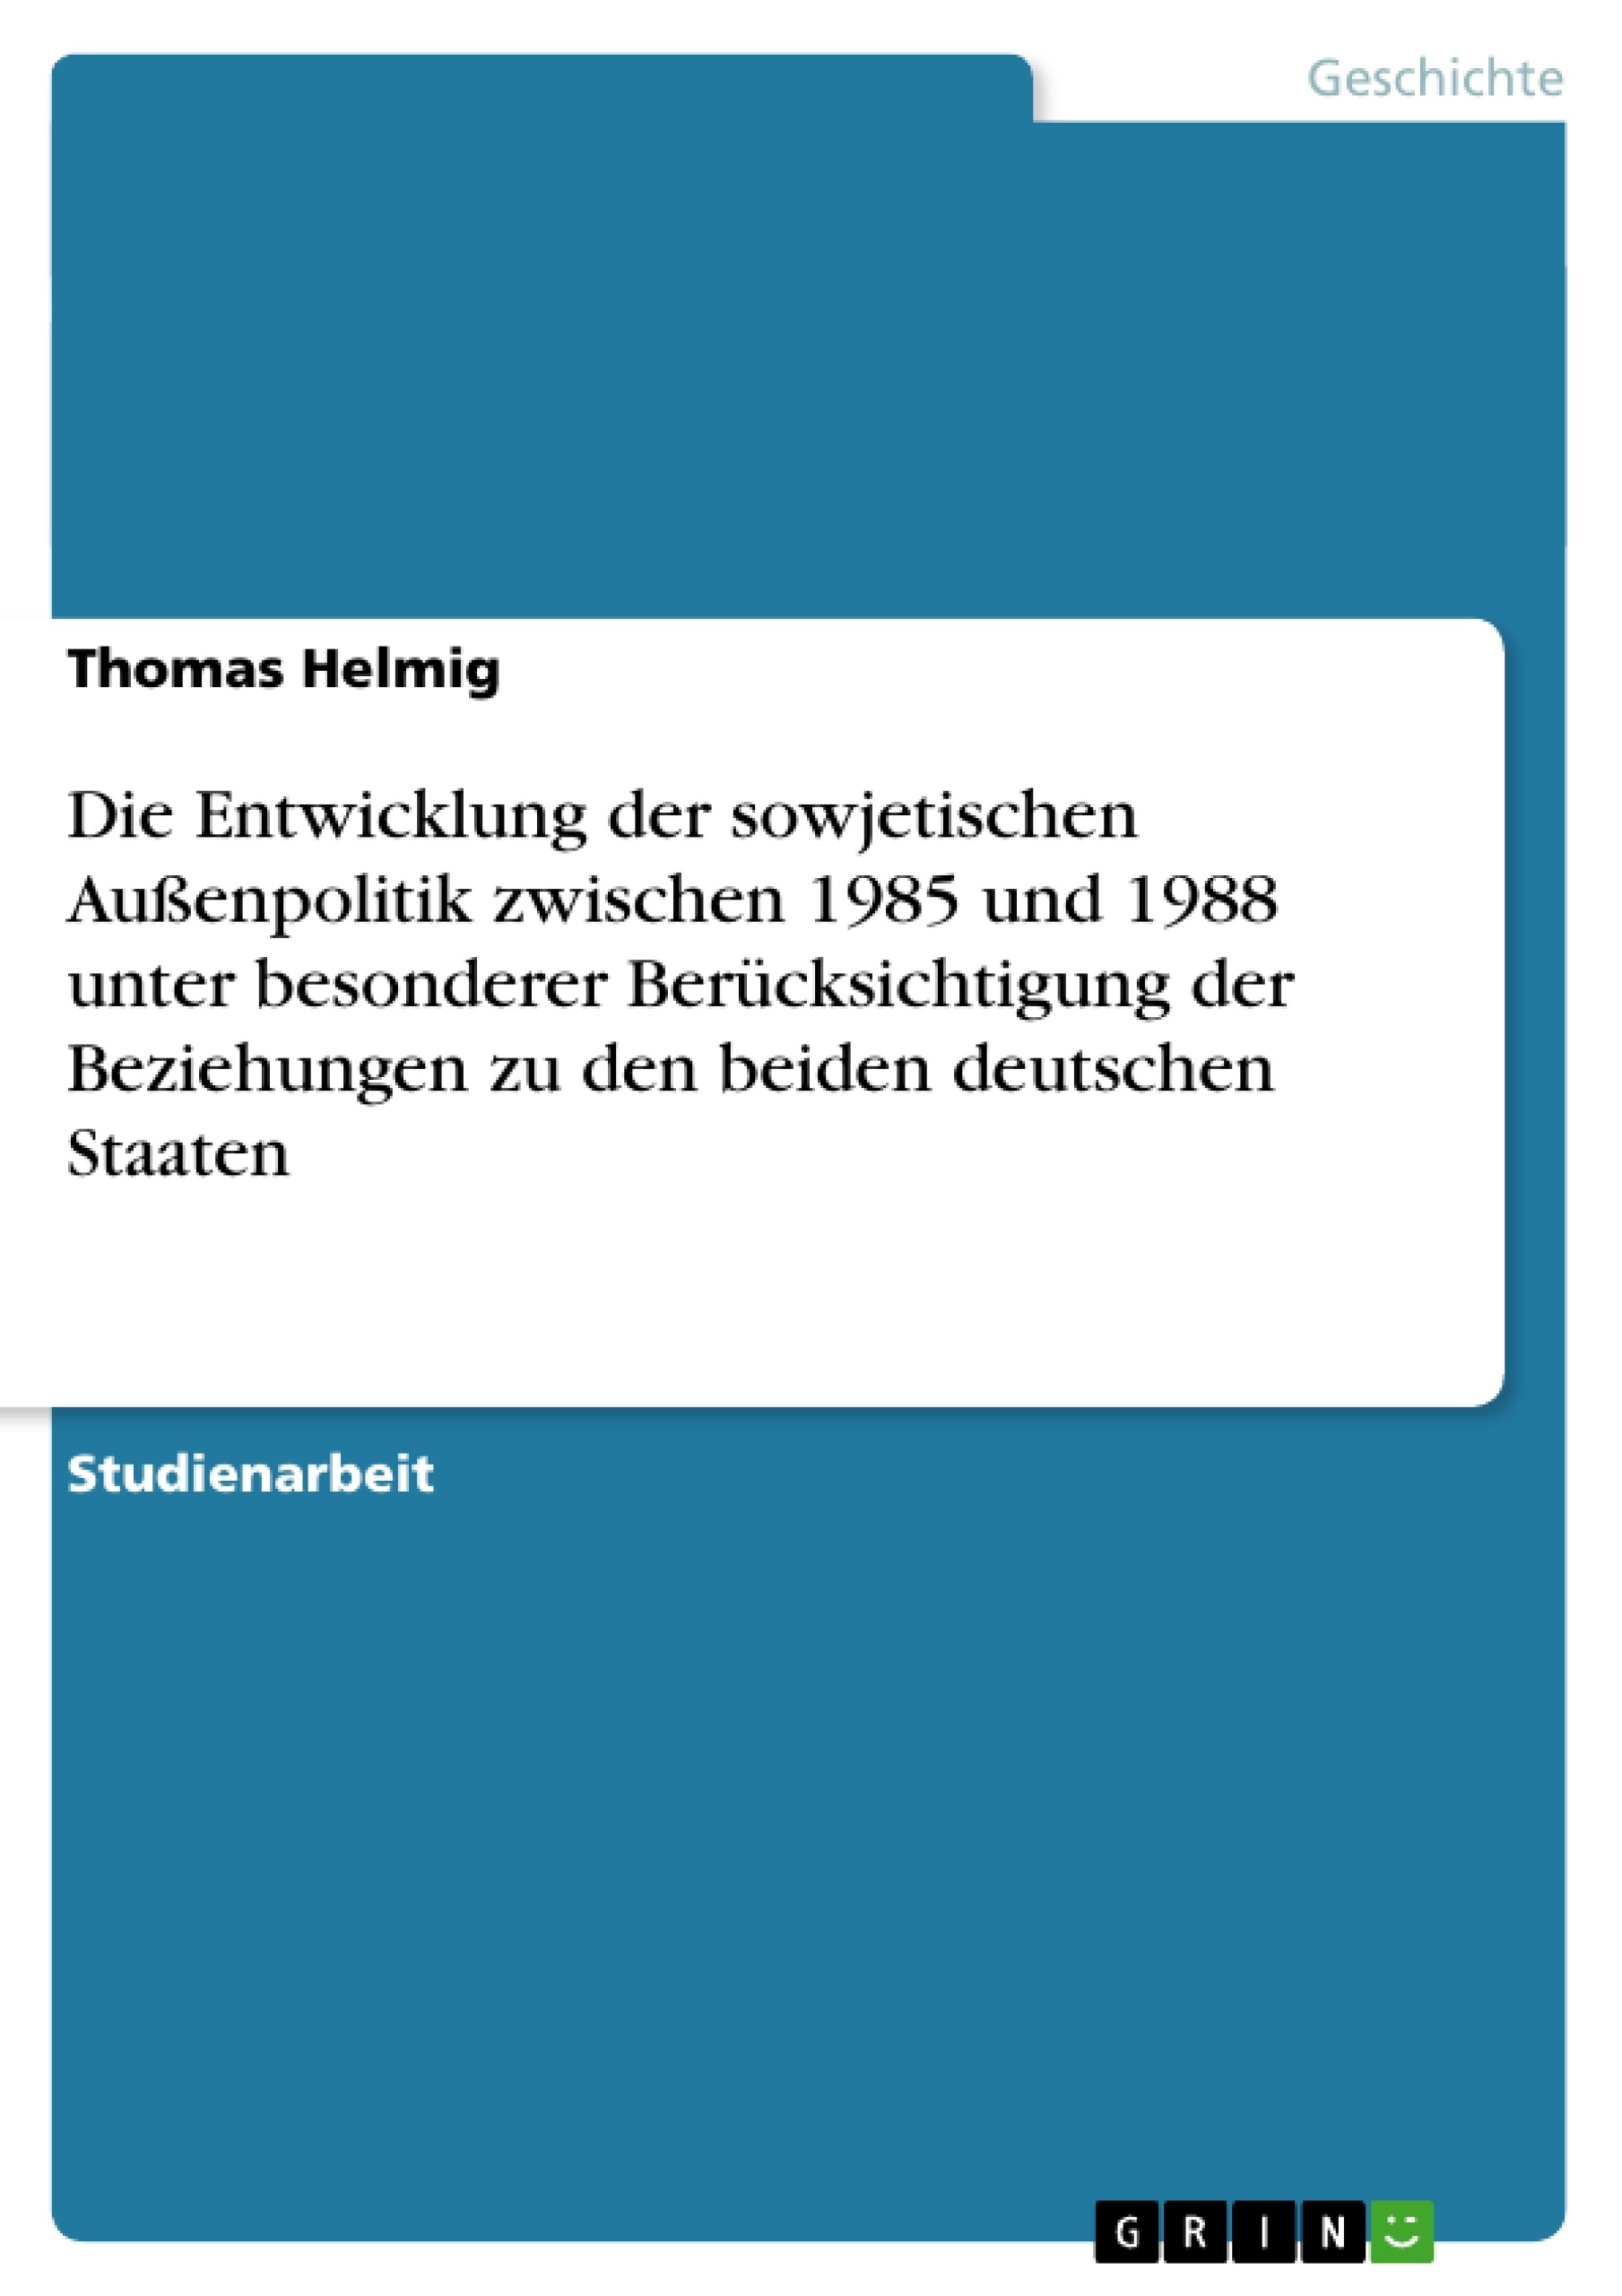 Titel: Die Entwicklung der sowjetischen Außenpolitik zwischen 1985 und 1988 unter besonderer Berücksichtigung der Beziehungen zu den beiden deutschen Staaten